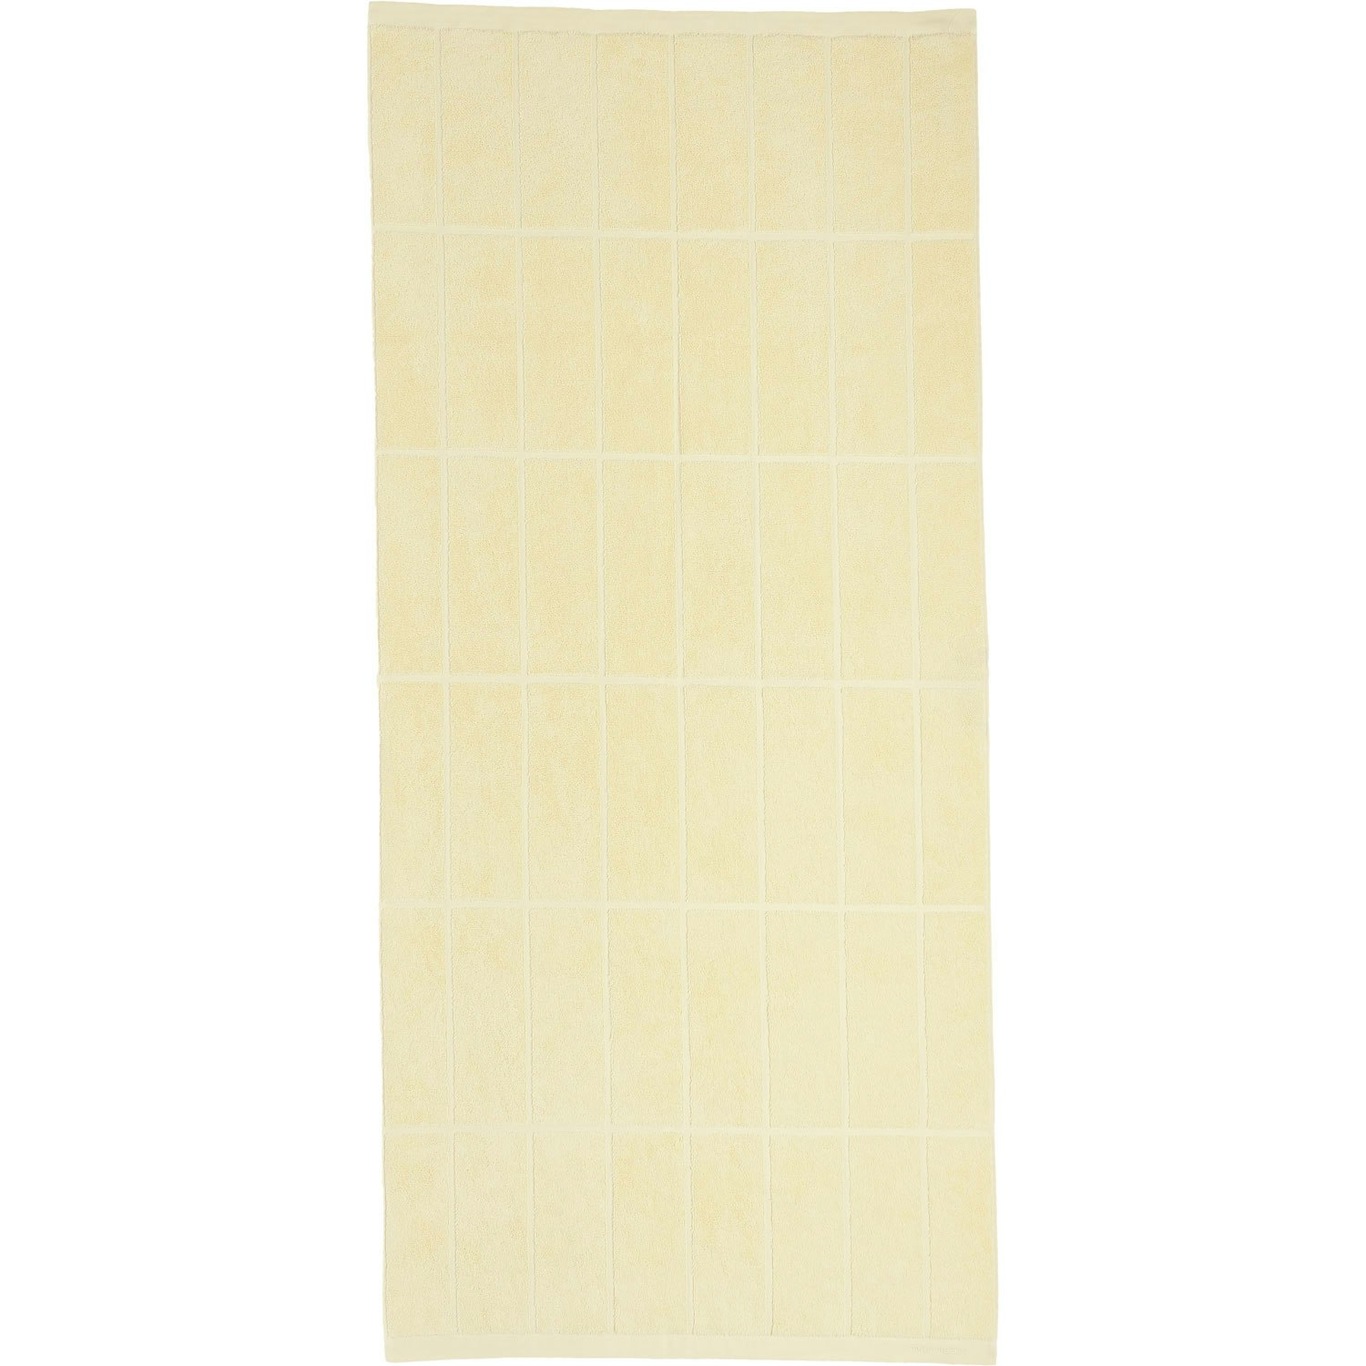 Tiiliskivi Handdoek 70x150 cm, Butter Yellow